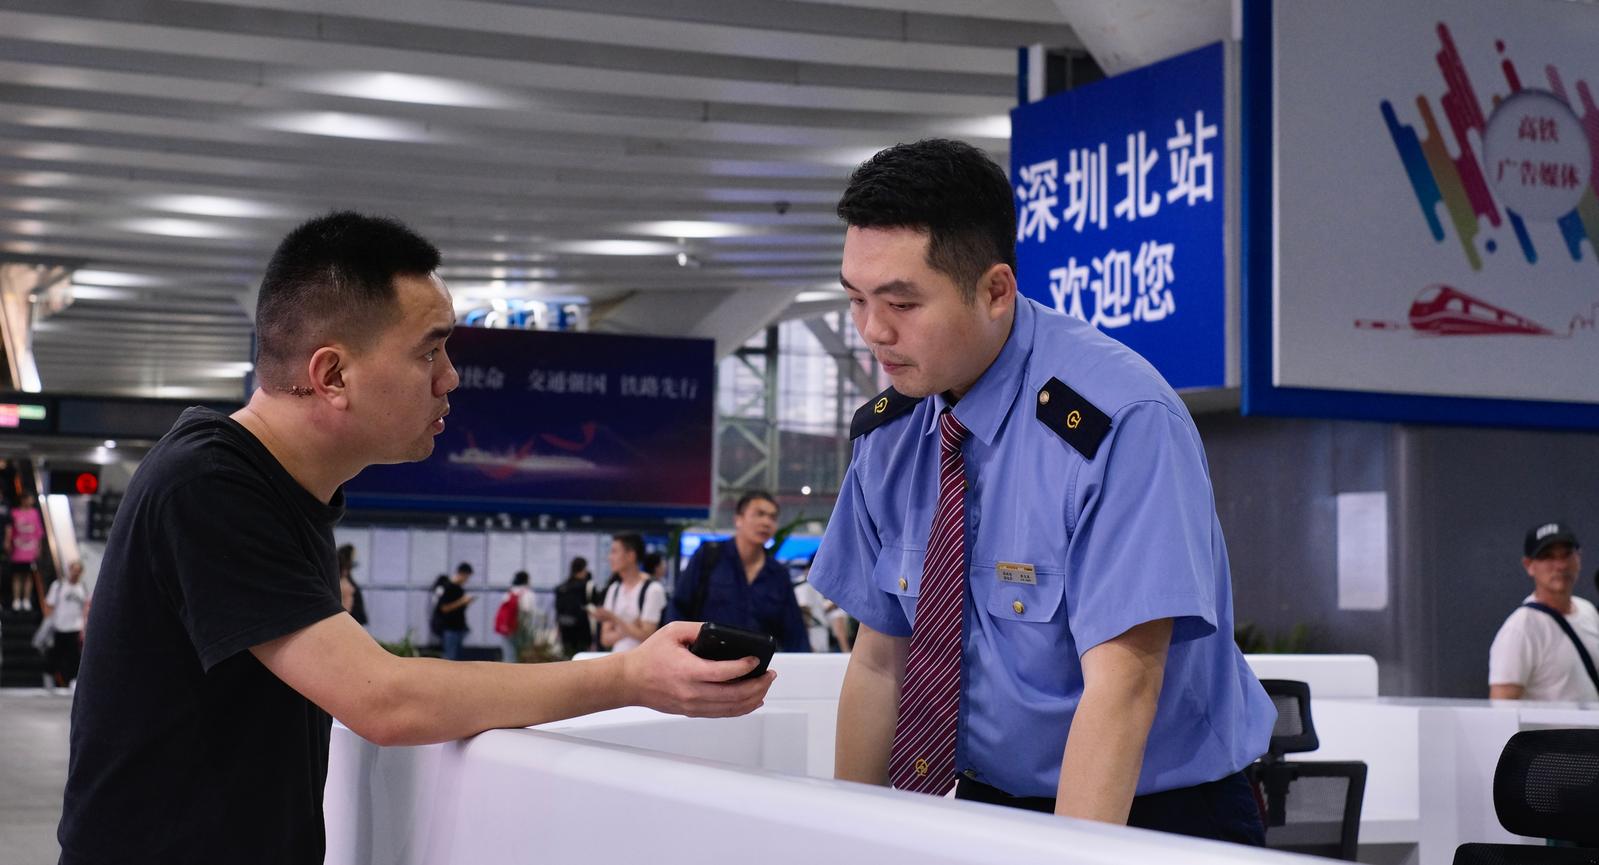 候车室引入“大堂经理”模式 深圳北站优化设备设施提升旅客候乘体验